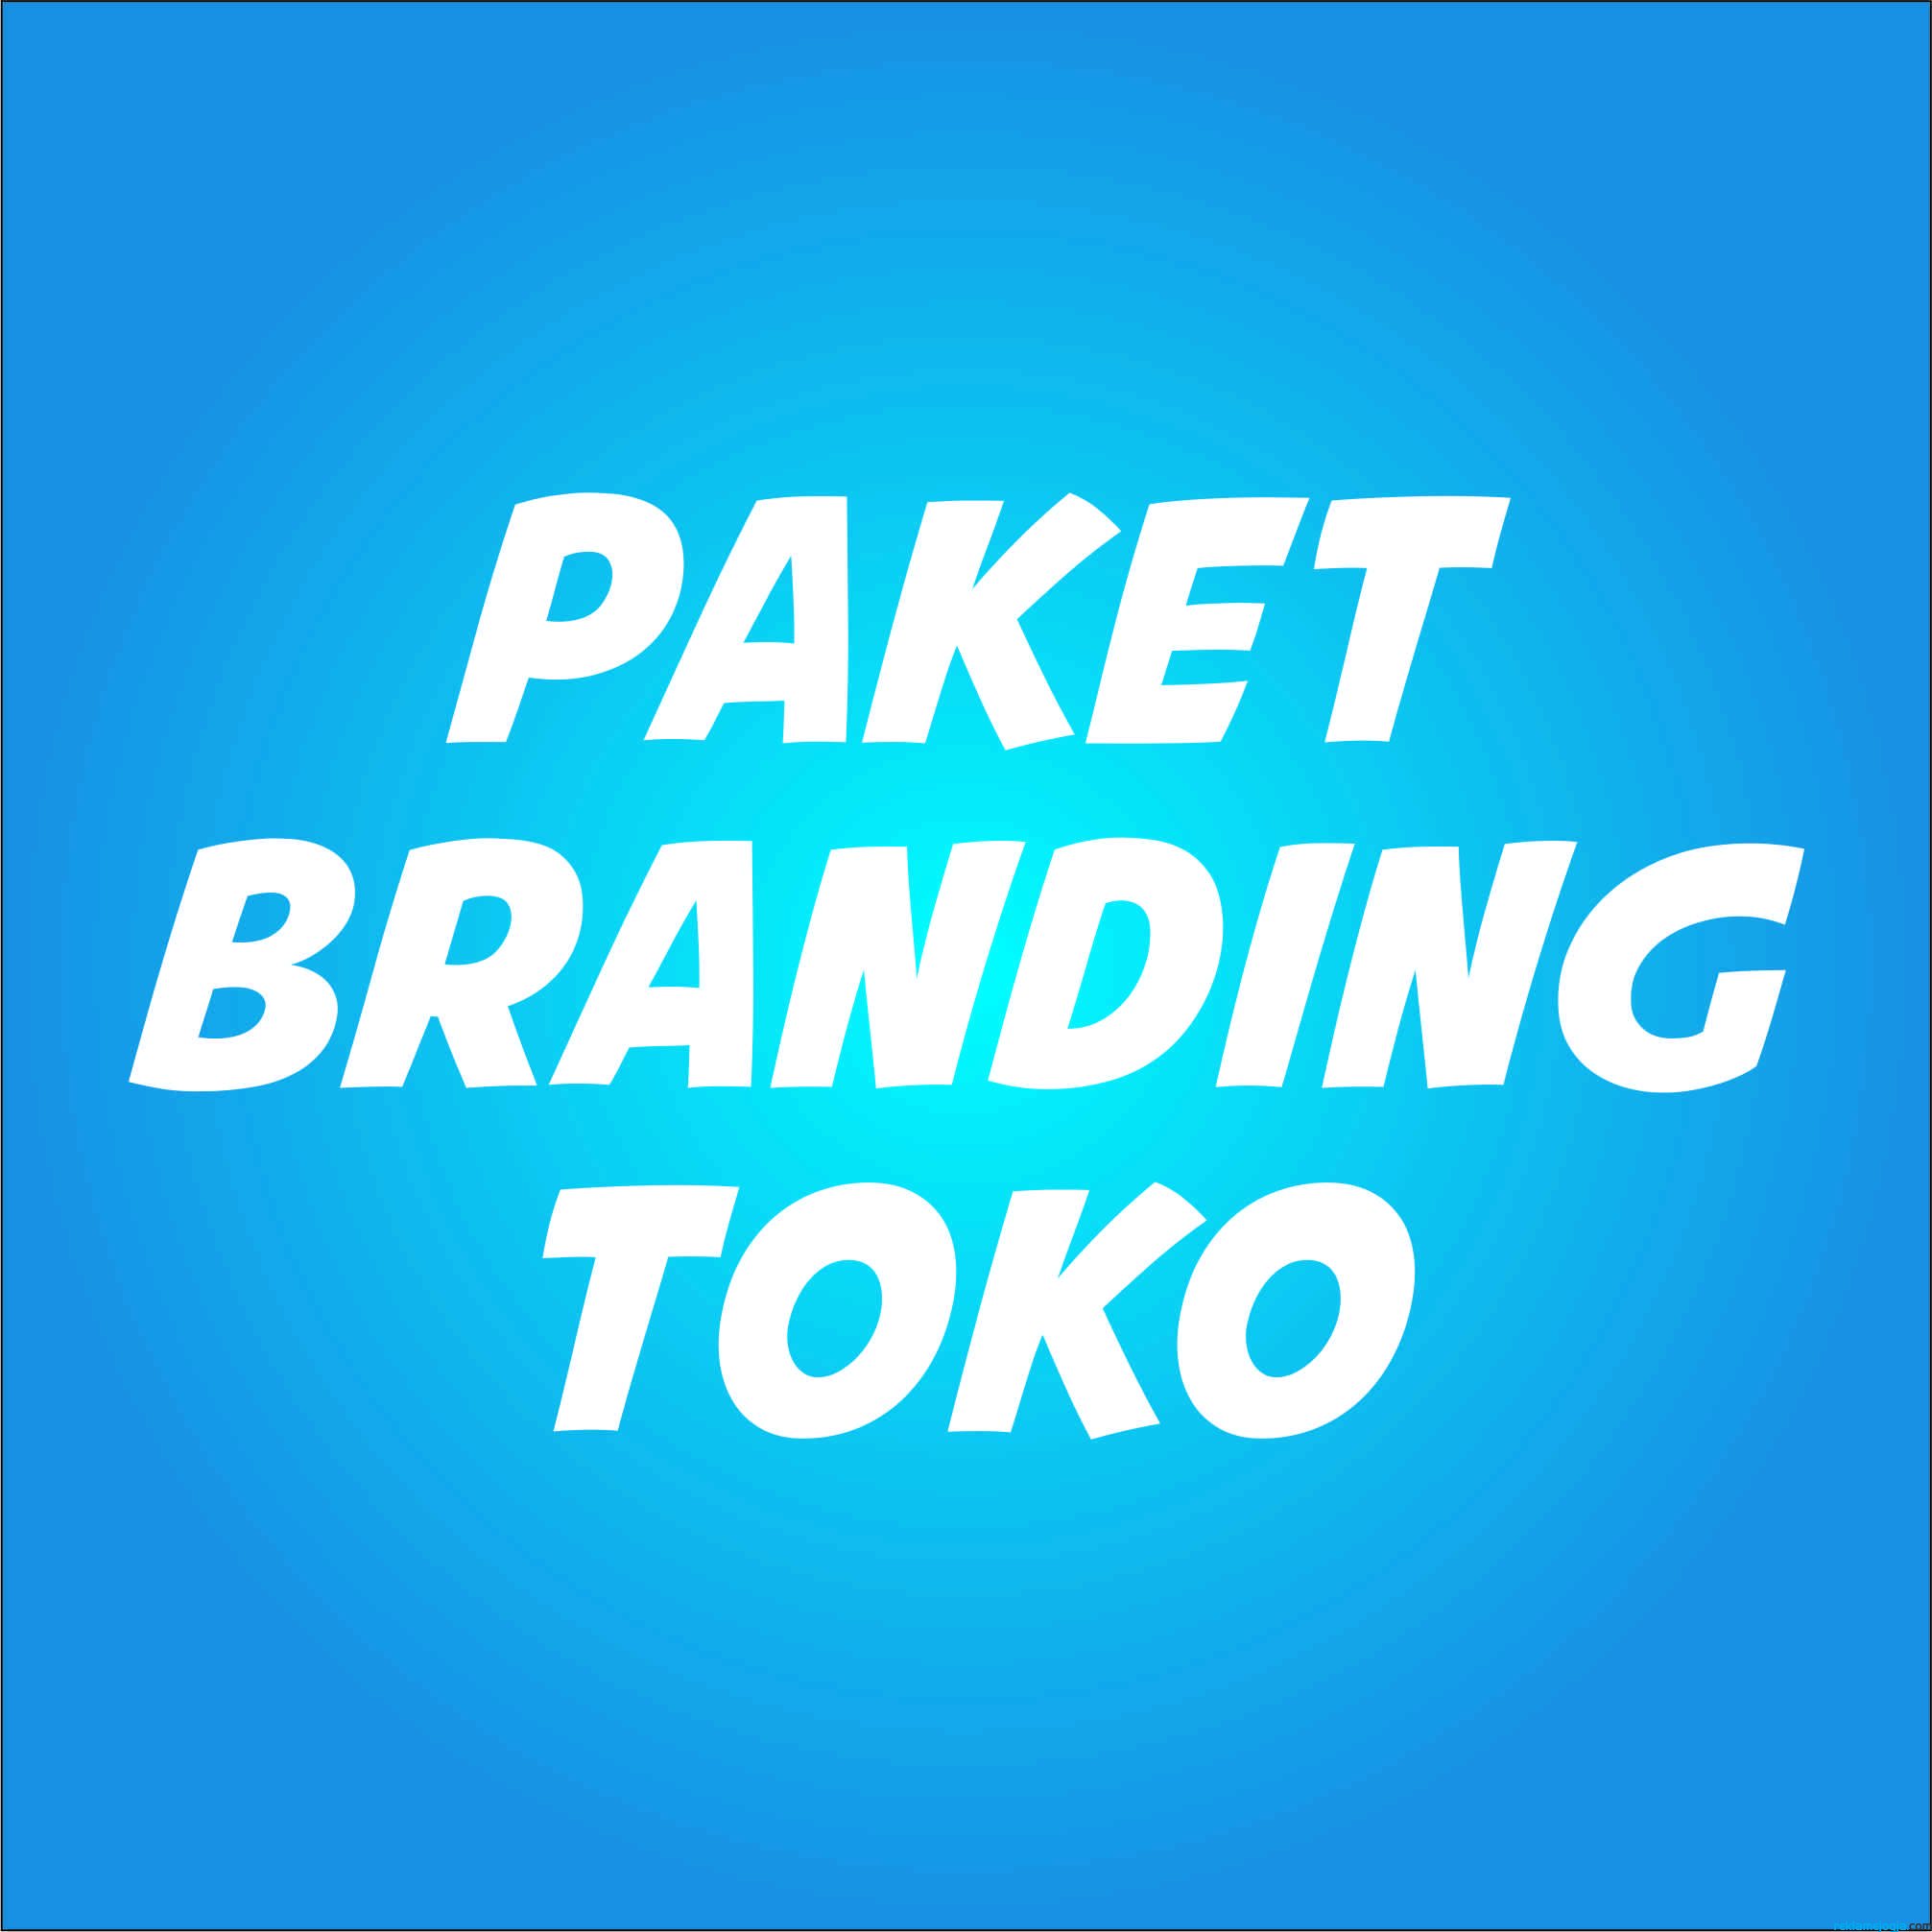 Paket Branding Toko